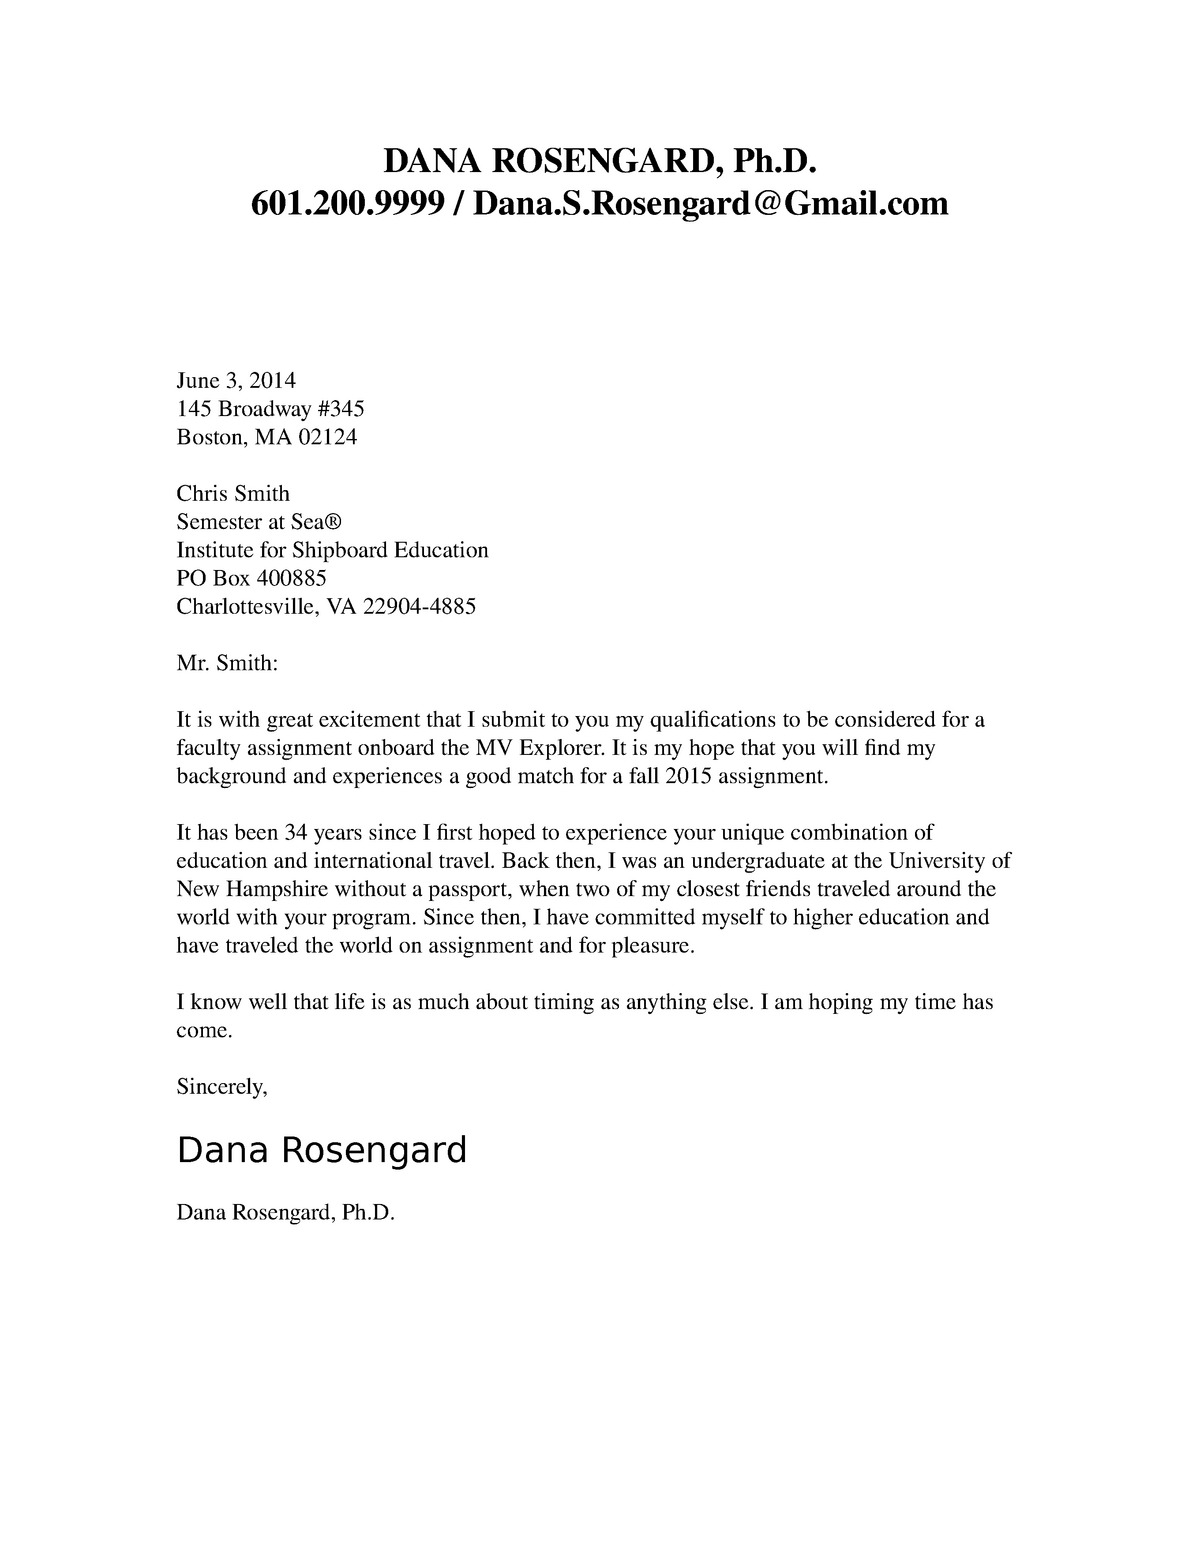 COM 201 - Cover Letter Example Two - DANA ROSENGARD, Ph. 601.200 / Dana ...